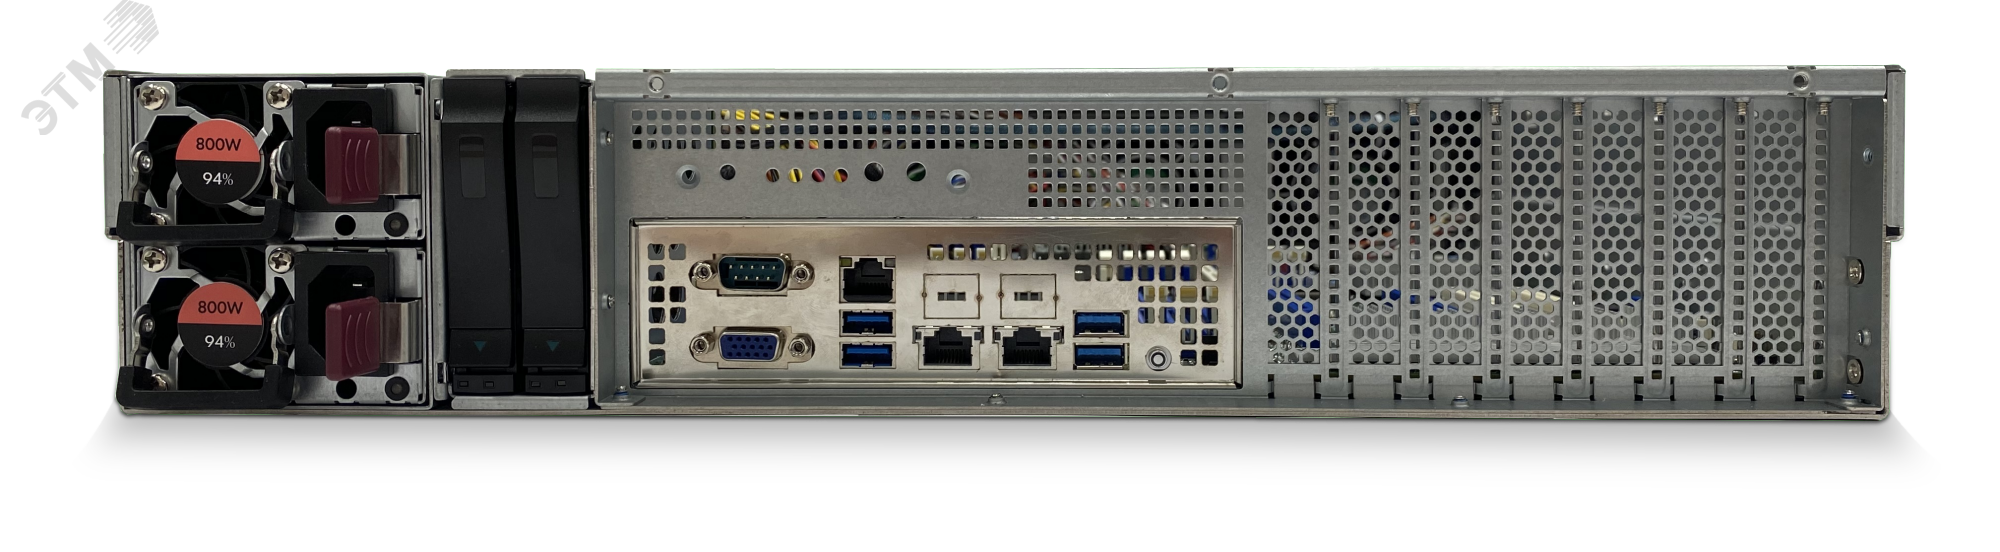 Сервер специализированный D202FW 2U, Xeon Scalable v2, до 4 накопителей, ОЗУ до 4 ТБ DDR4 T50 D202FW Aquarius - превью 3